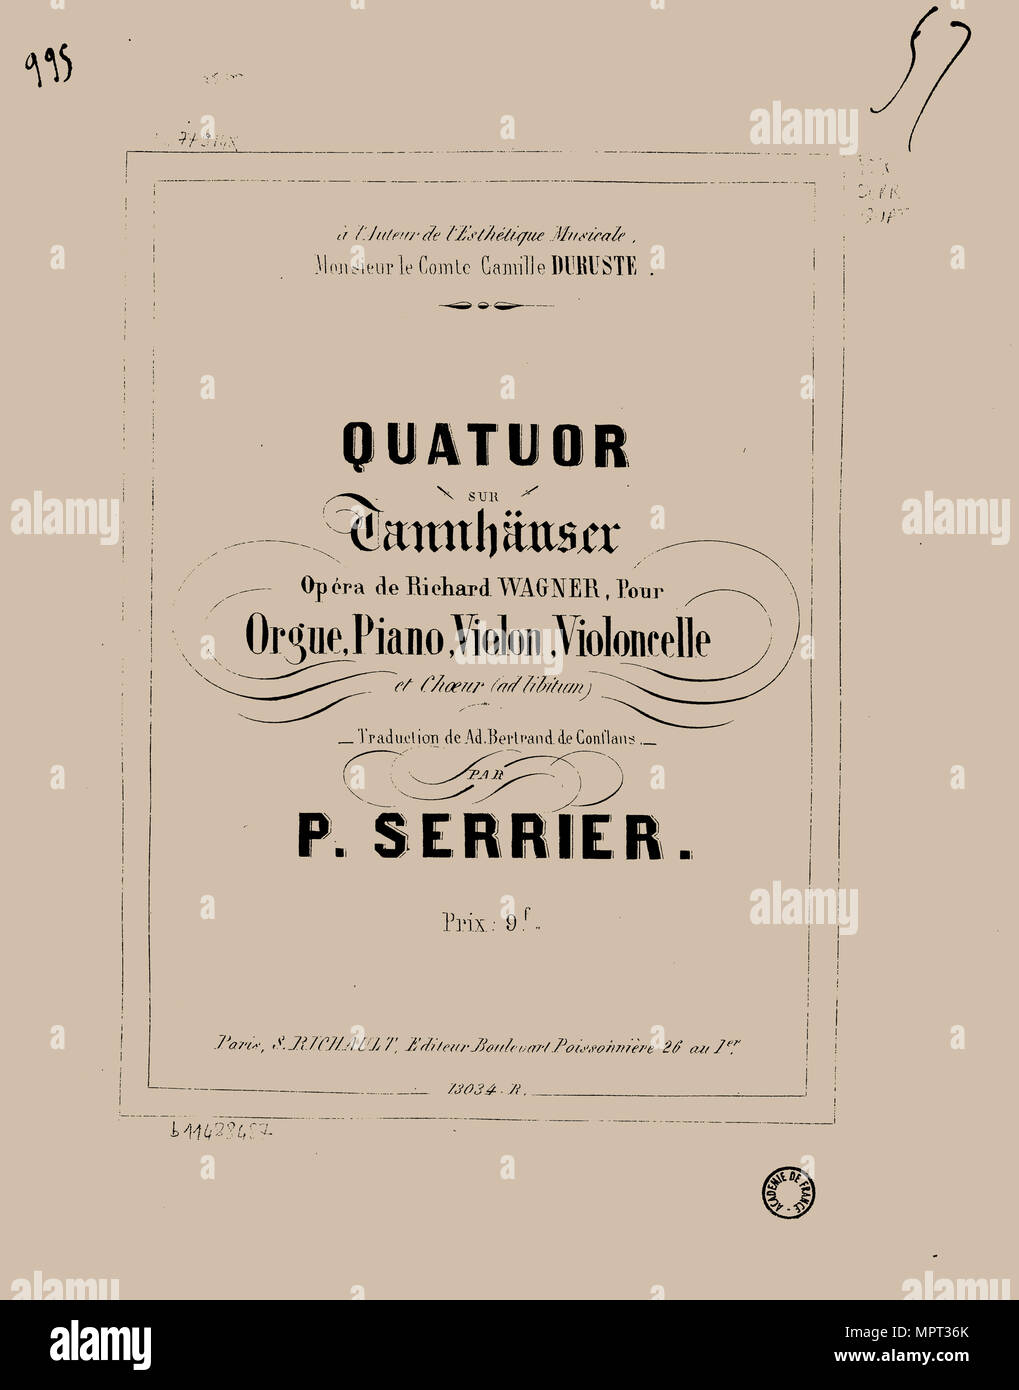 Quatuor sur Tannhäuser de Richard Wagner pour orgue, piano, violon, violoncelle et choeur, 1857. Stock Photo